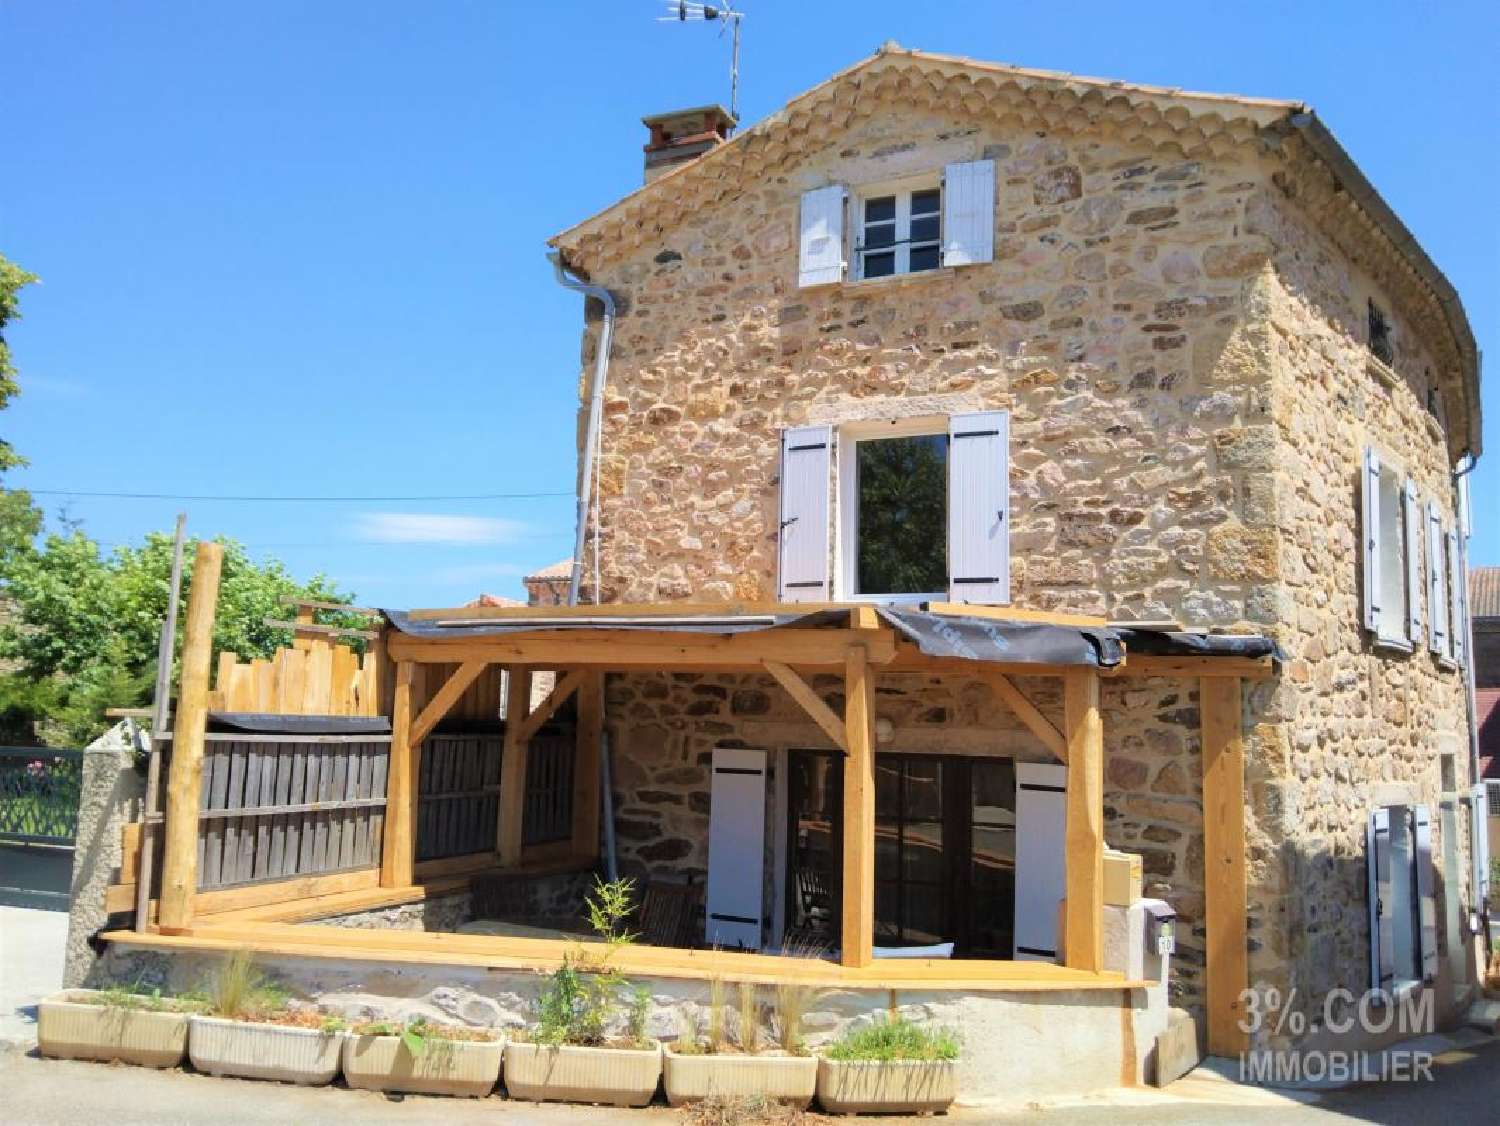  à vendre maison de village Alboussière Ardèche 1